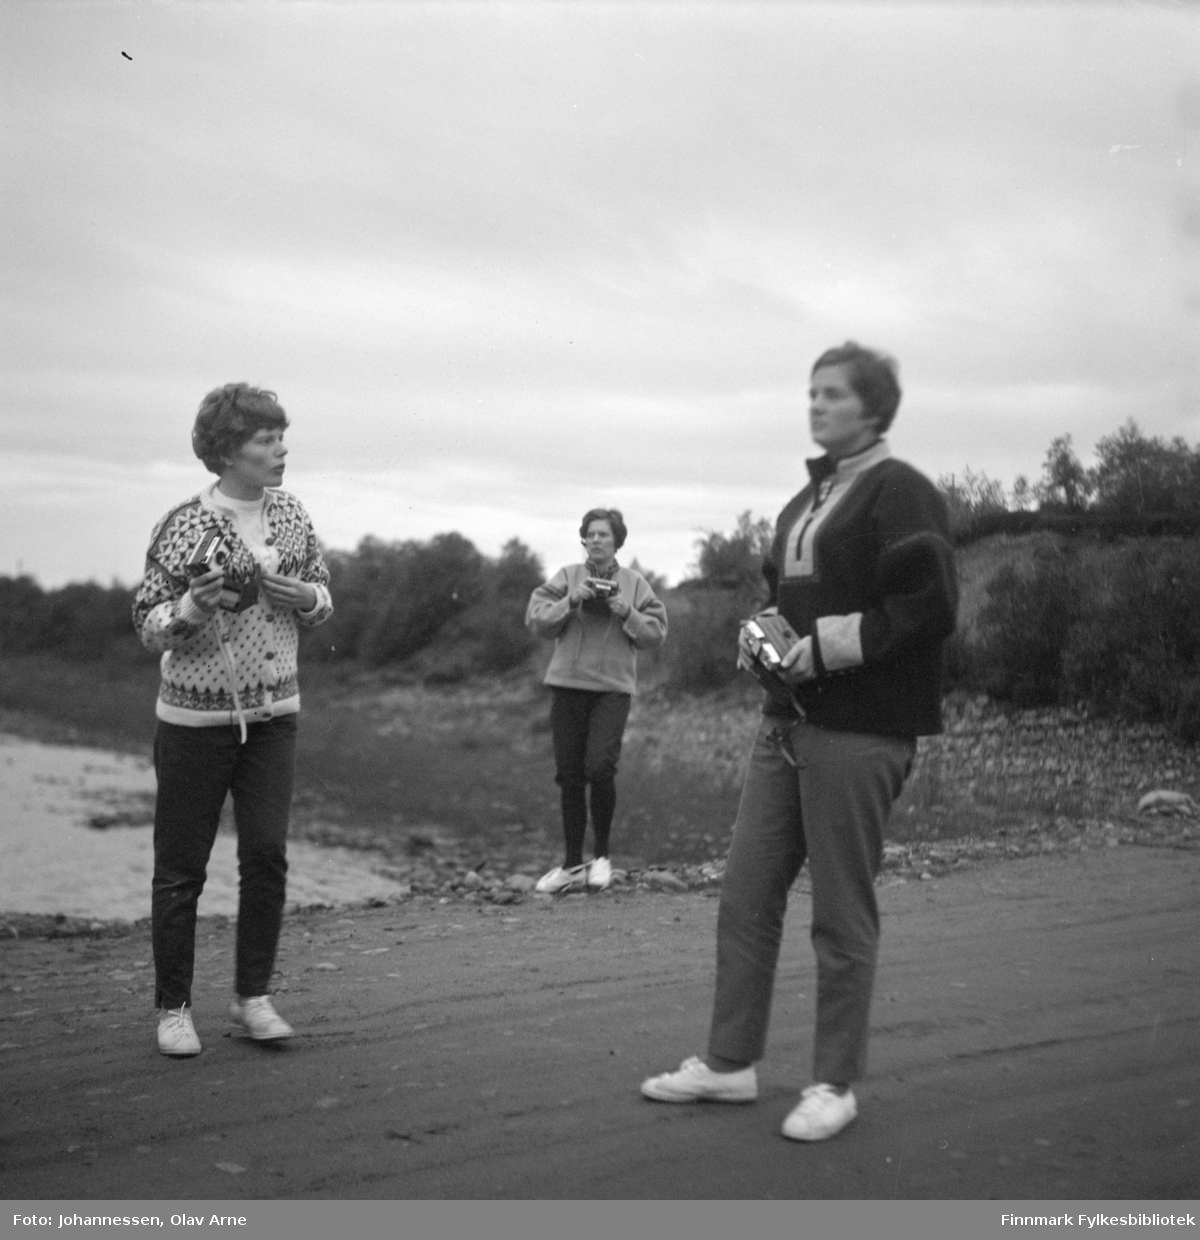 Foto av tre ukjente kvinner med fotoapparat

Kvinnene har med seg et slags pocket kamera 1960-talls modell

Foto av ukjent sted

Foto trolig tatt på1970-tallet